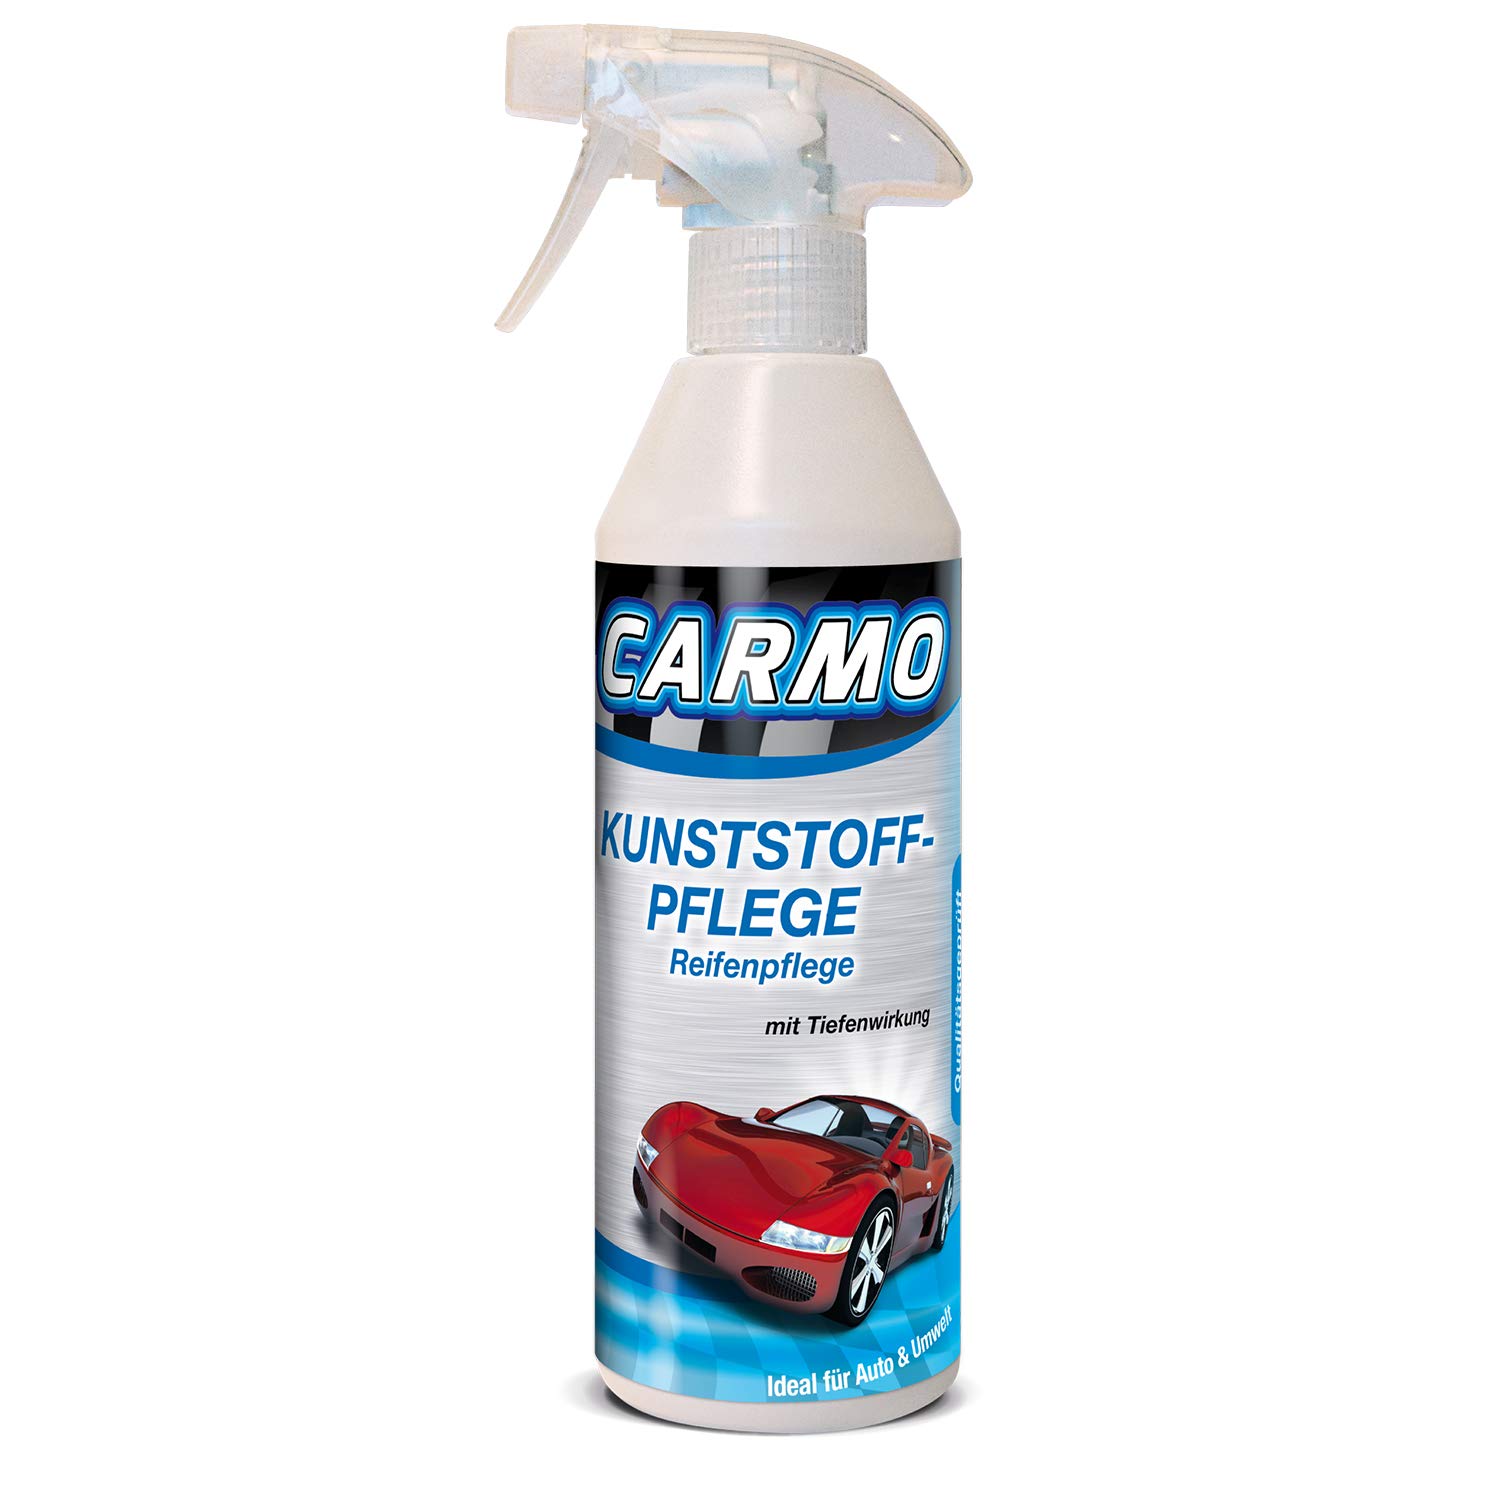 CARMO Kunststoffpflege mit Tiefenwirkung/Reifenpflege - 3 Stück von CARMO